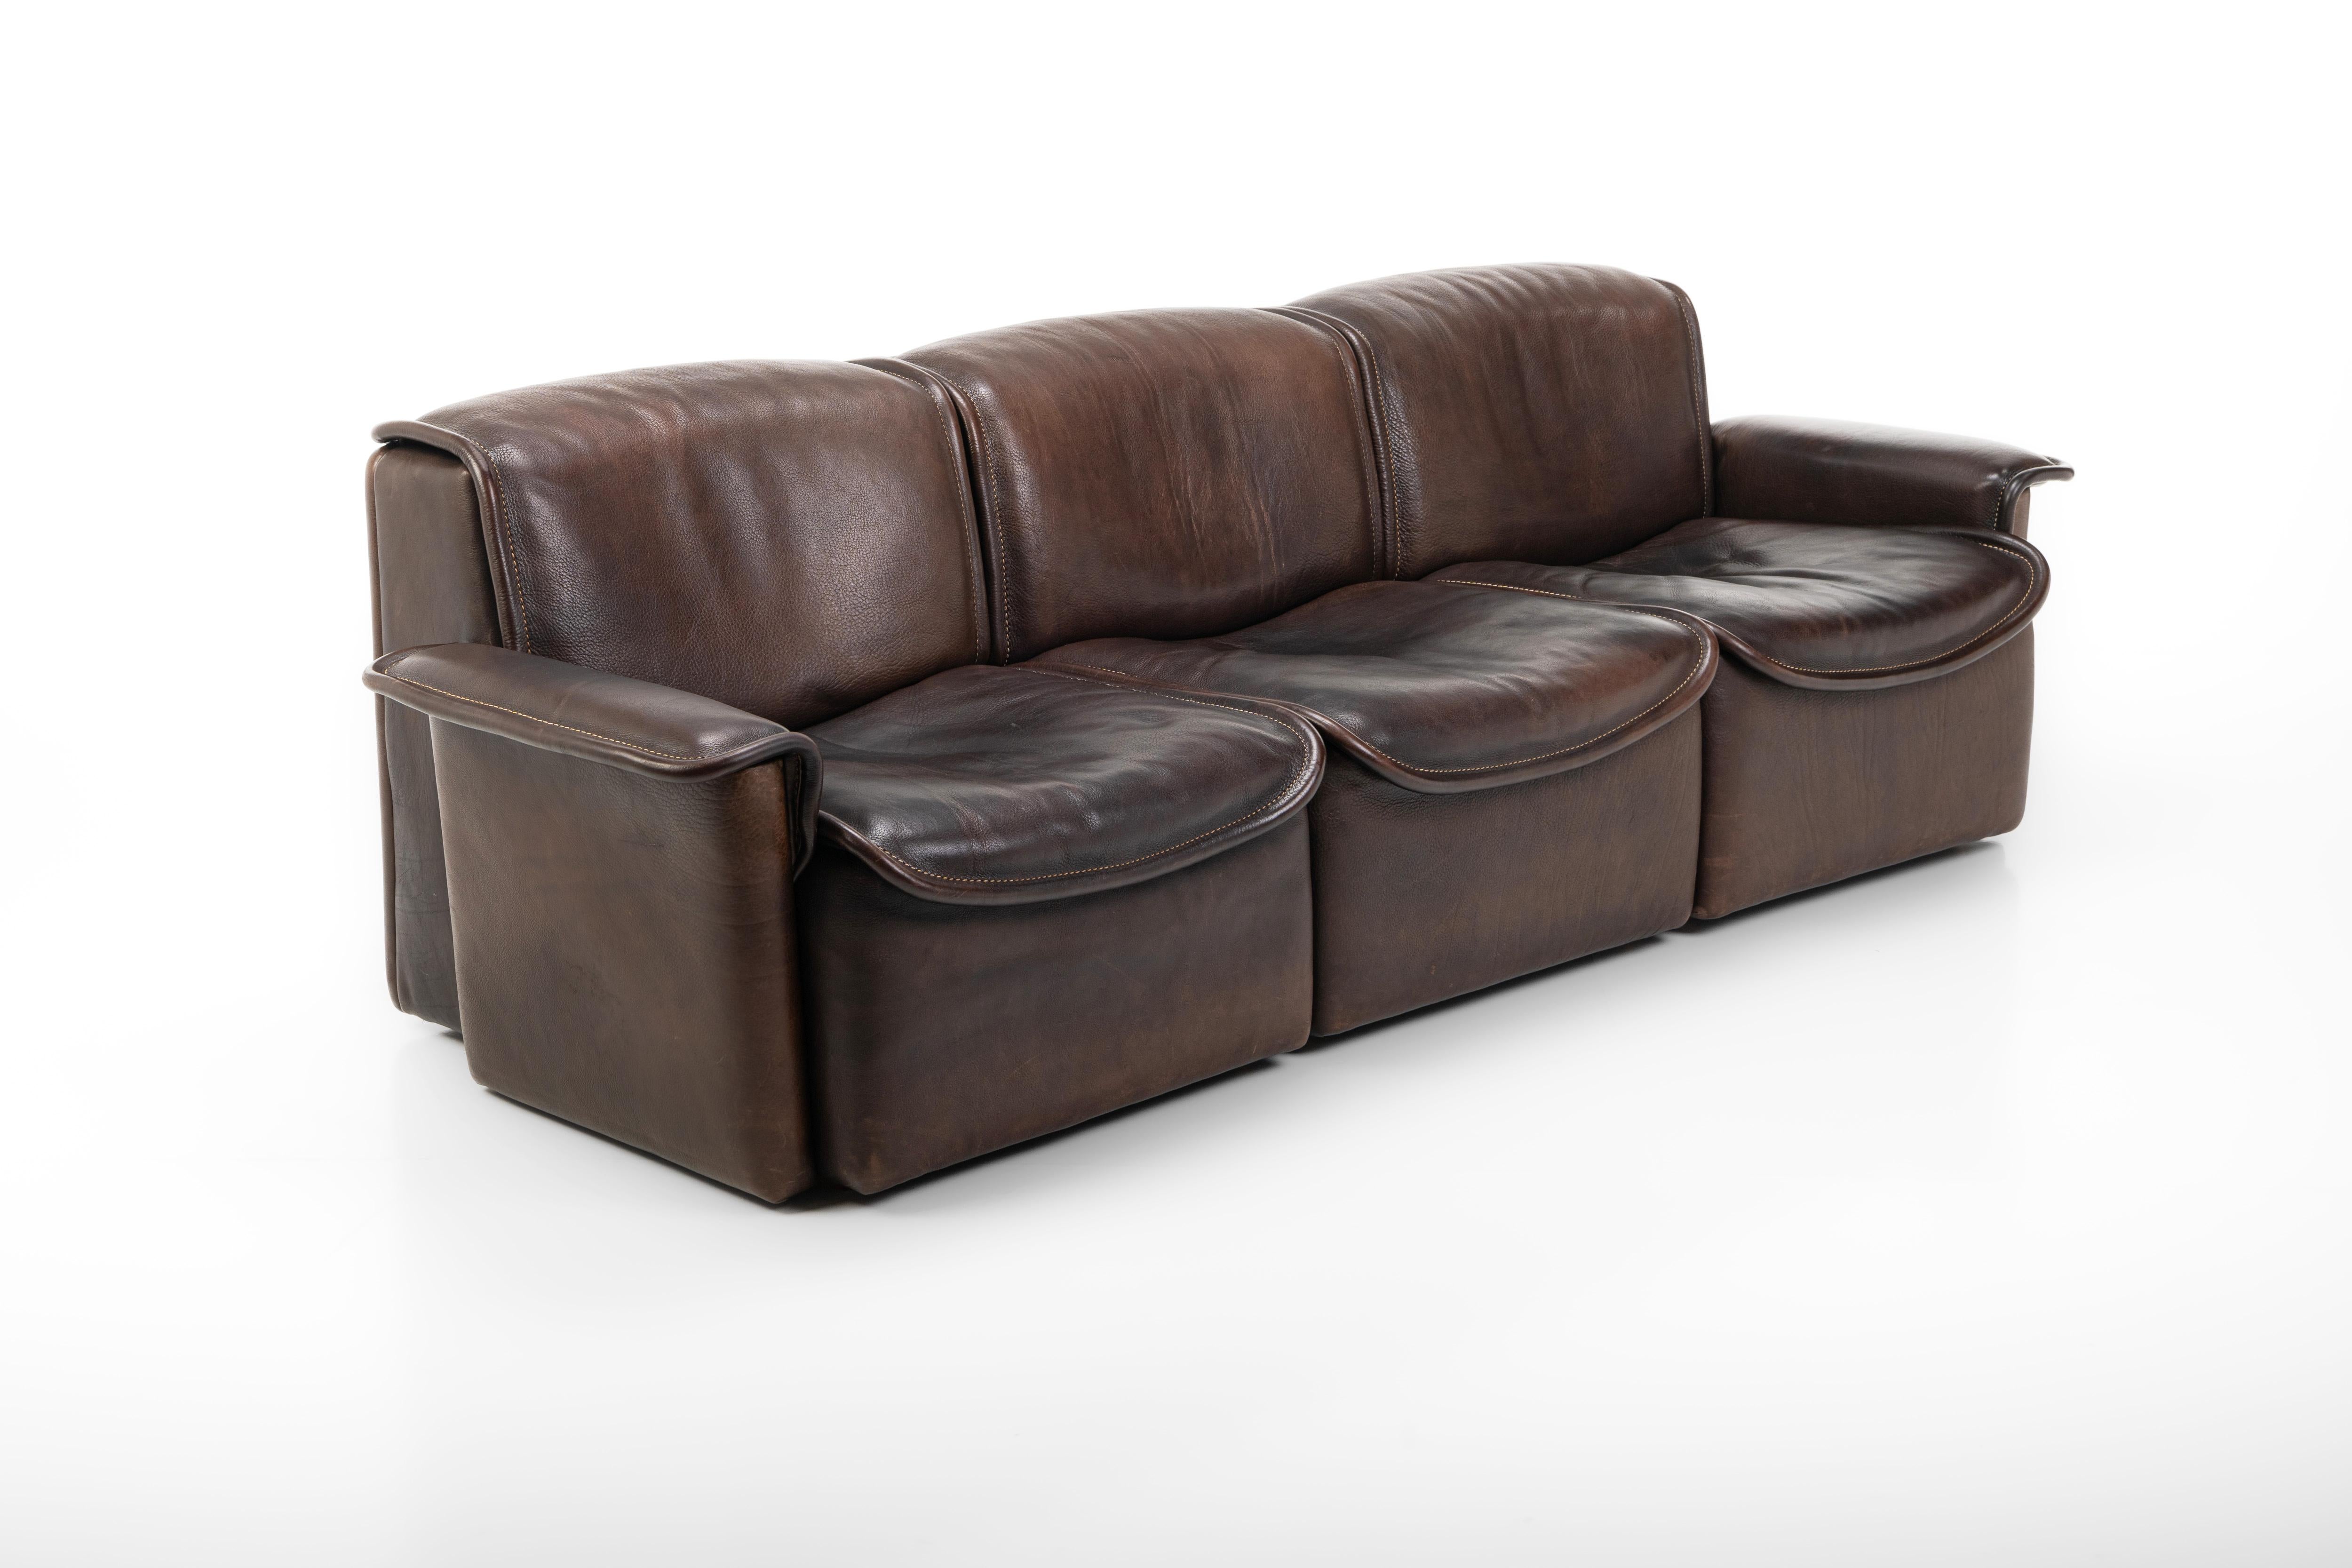 Cet exquis canapé vintage, tapissé de cuir de buffle marron foncé, présente le modèle DS12 des années 1970, fabriqué par le collectif de design suisse Team De Sede. Un ensemble de deux chaises longues est également disponible

Dimensions :
W: 223